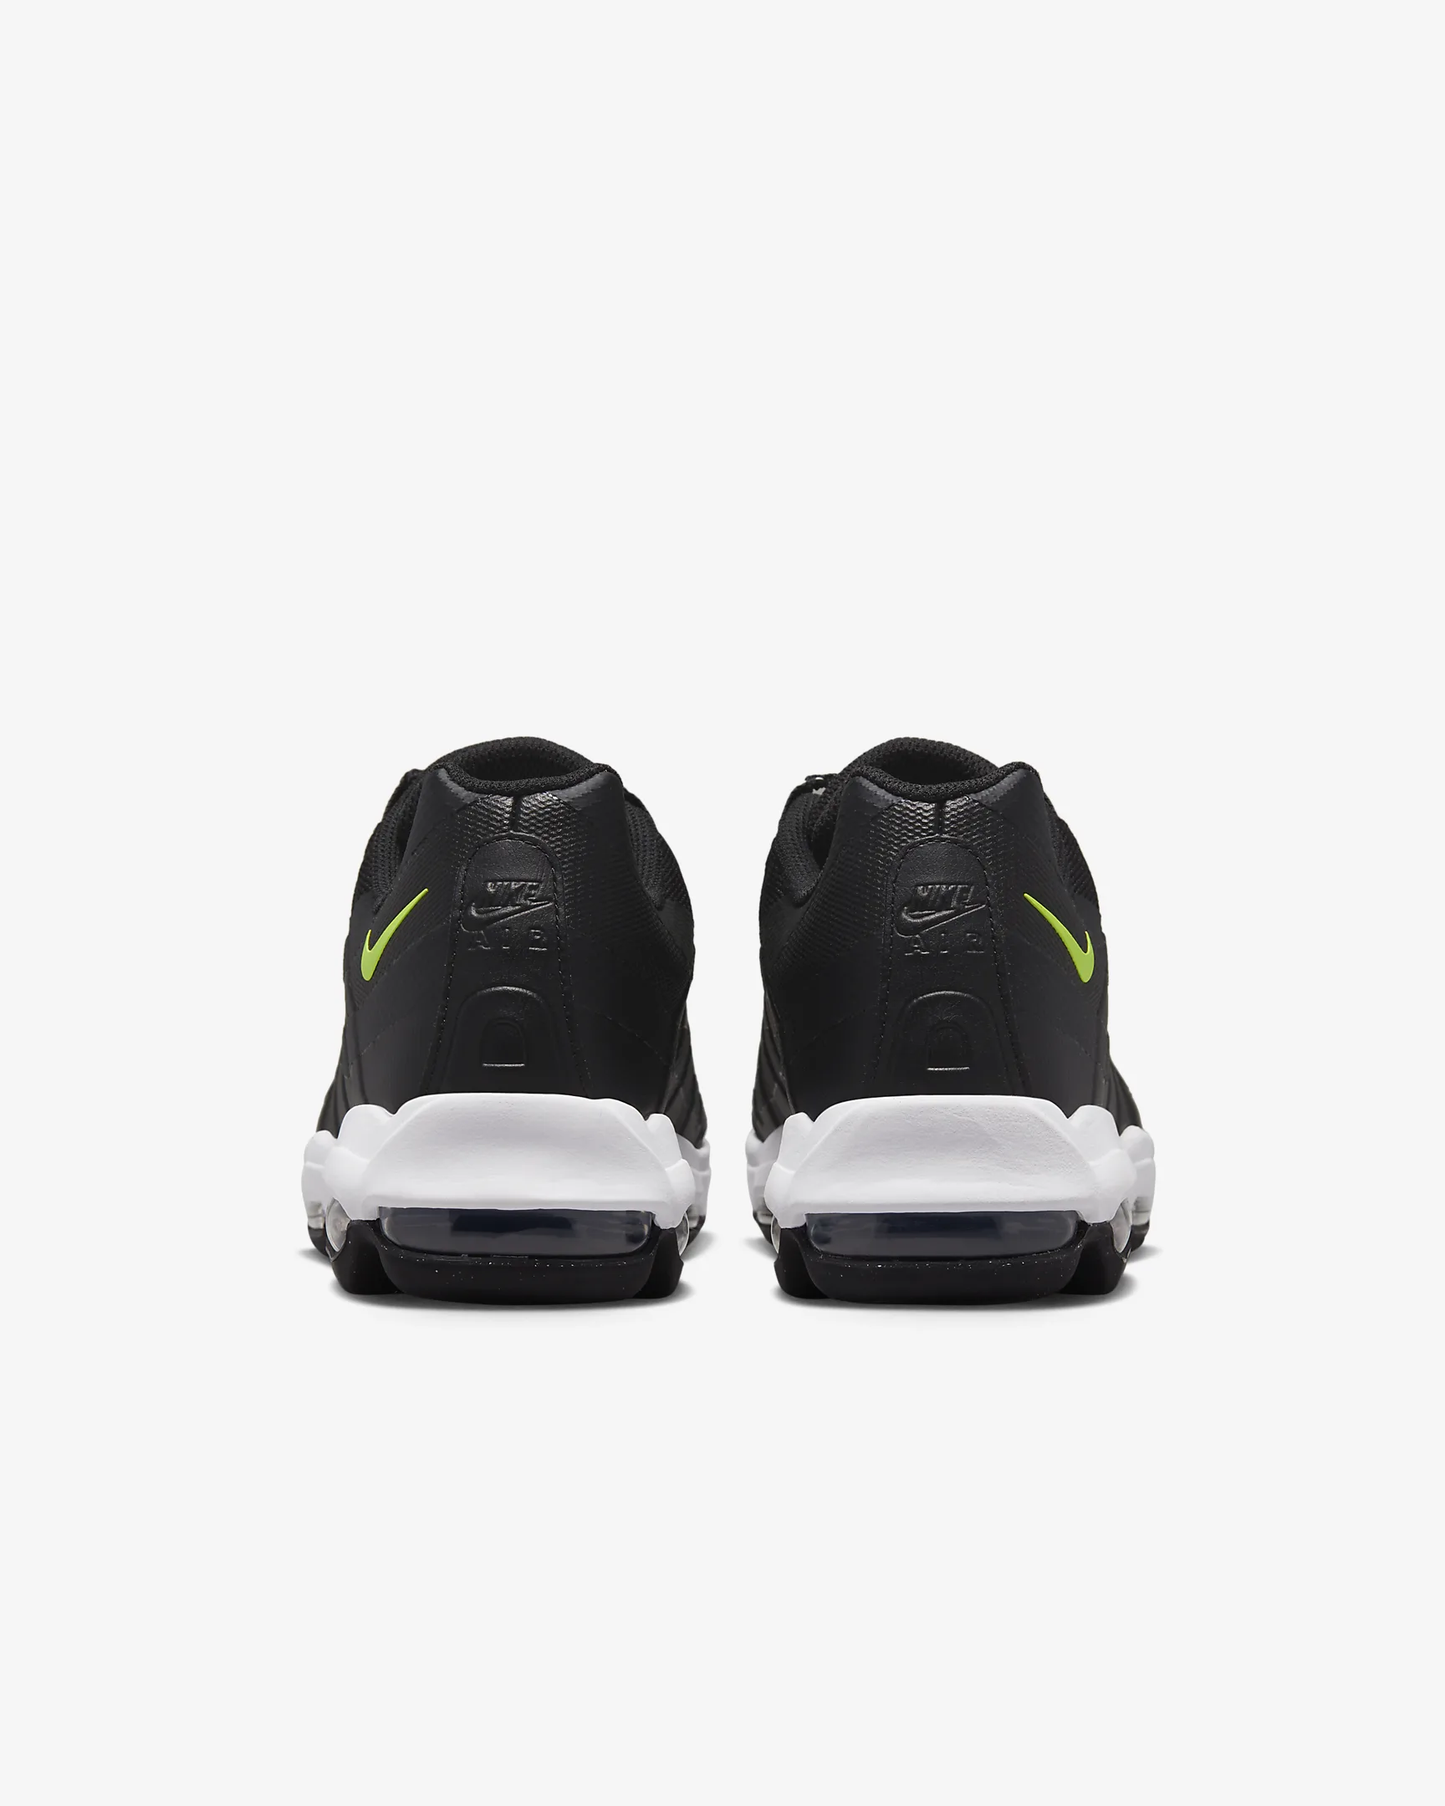 Nike - Air Max 95 Ultra - Black Volt White